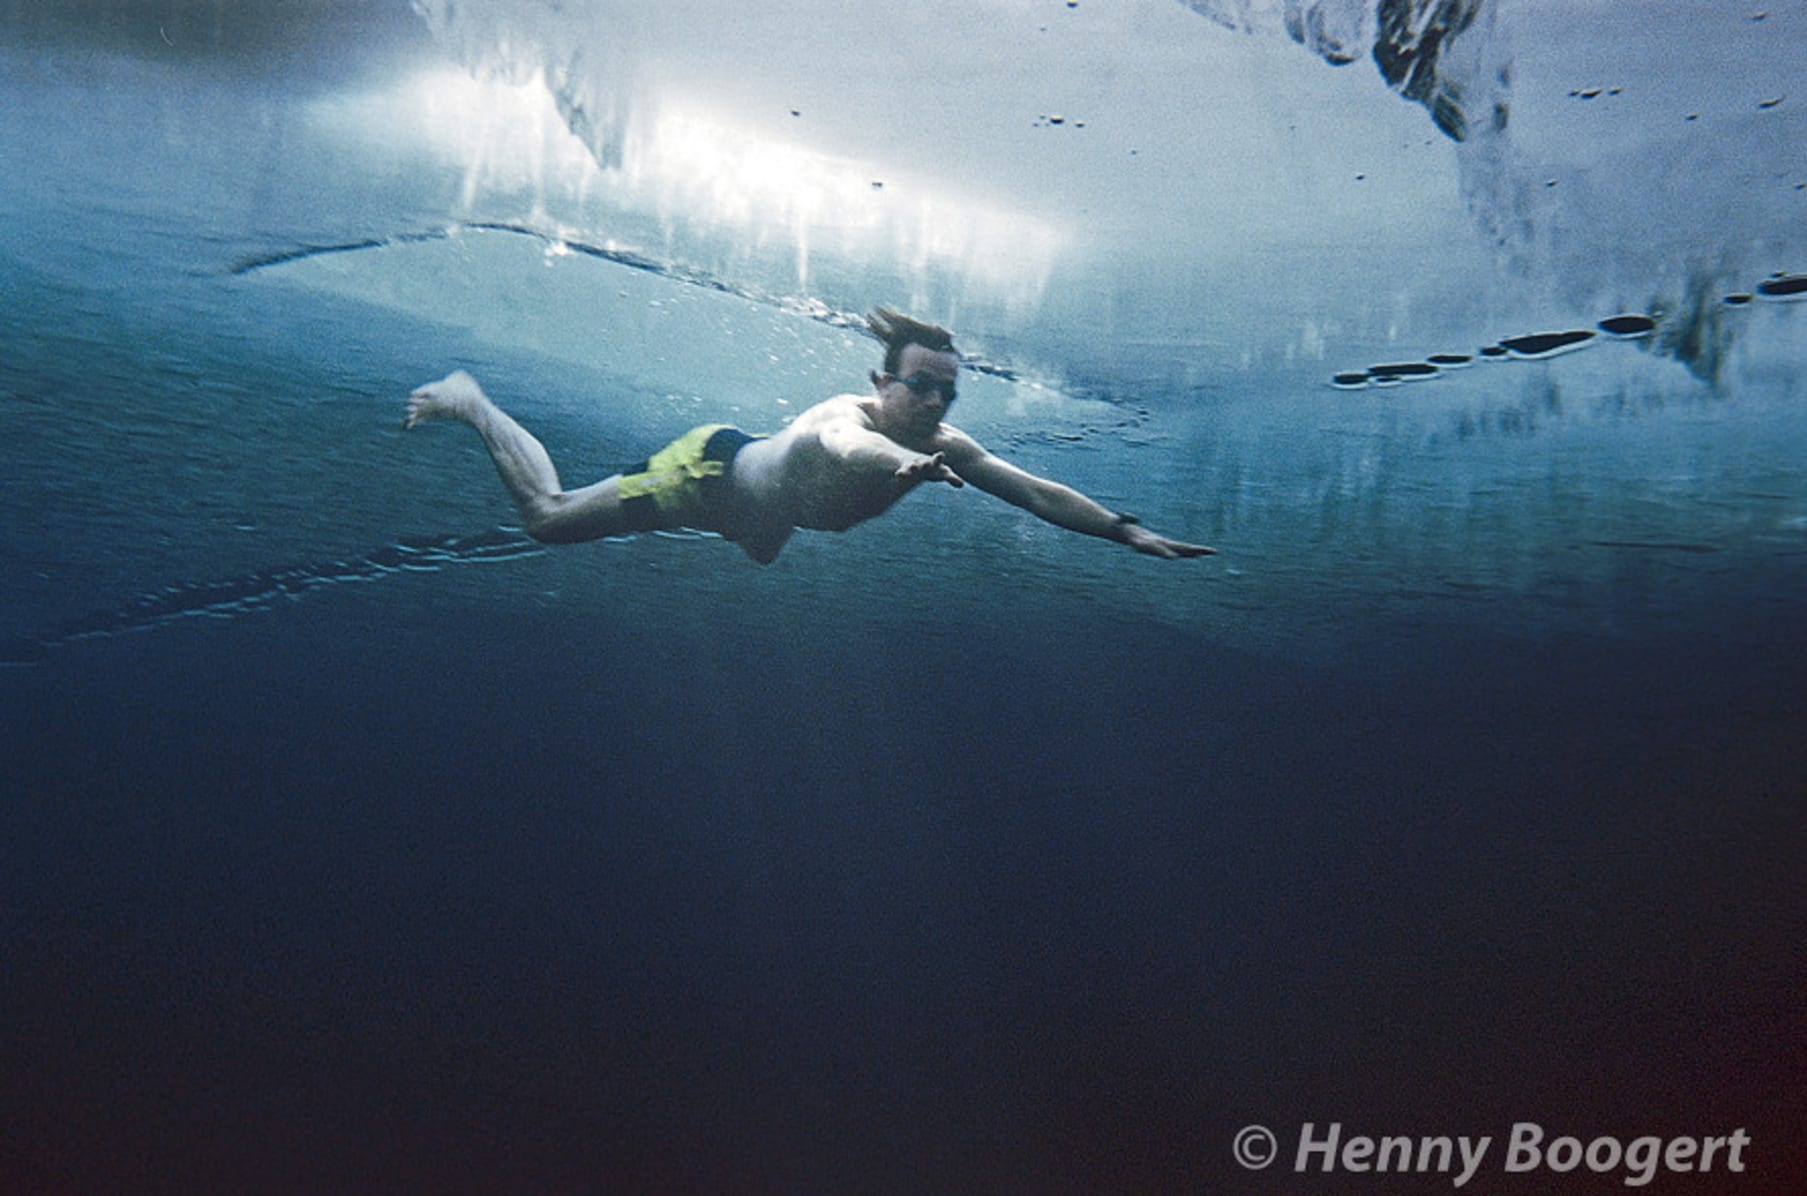 Wim Hof method and freediving